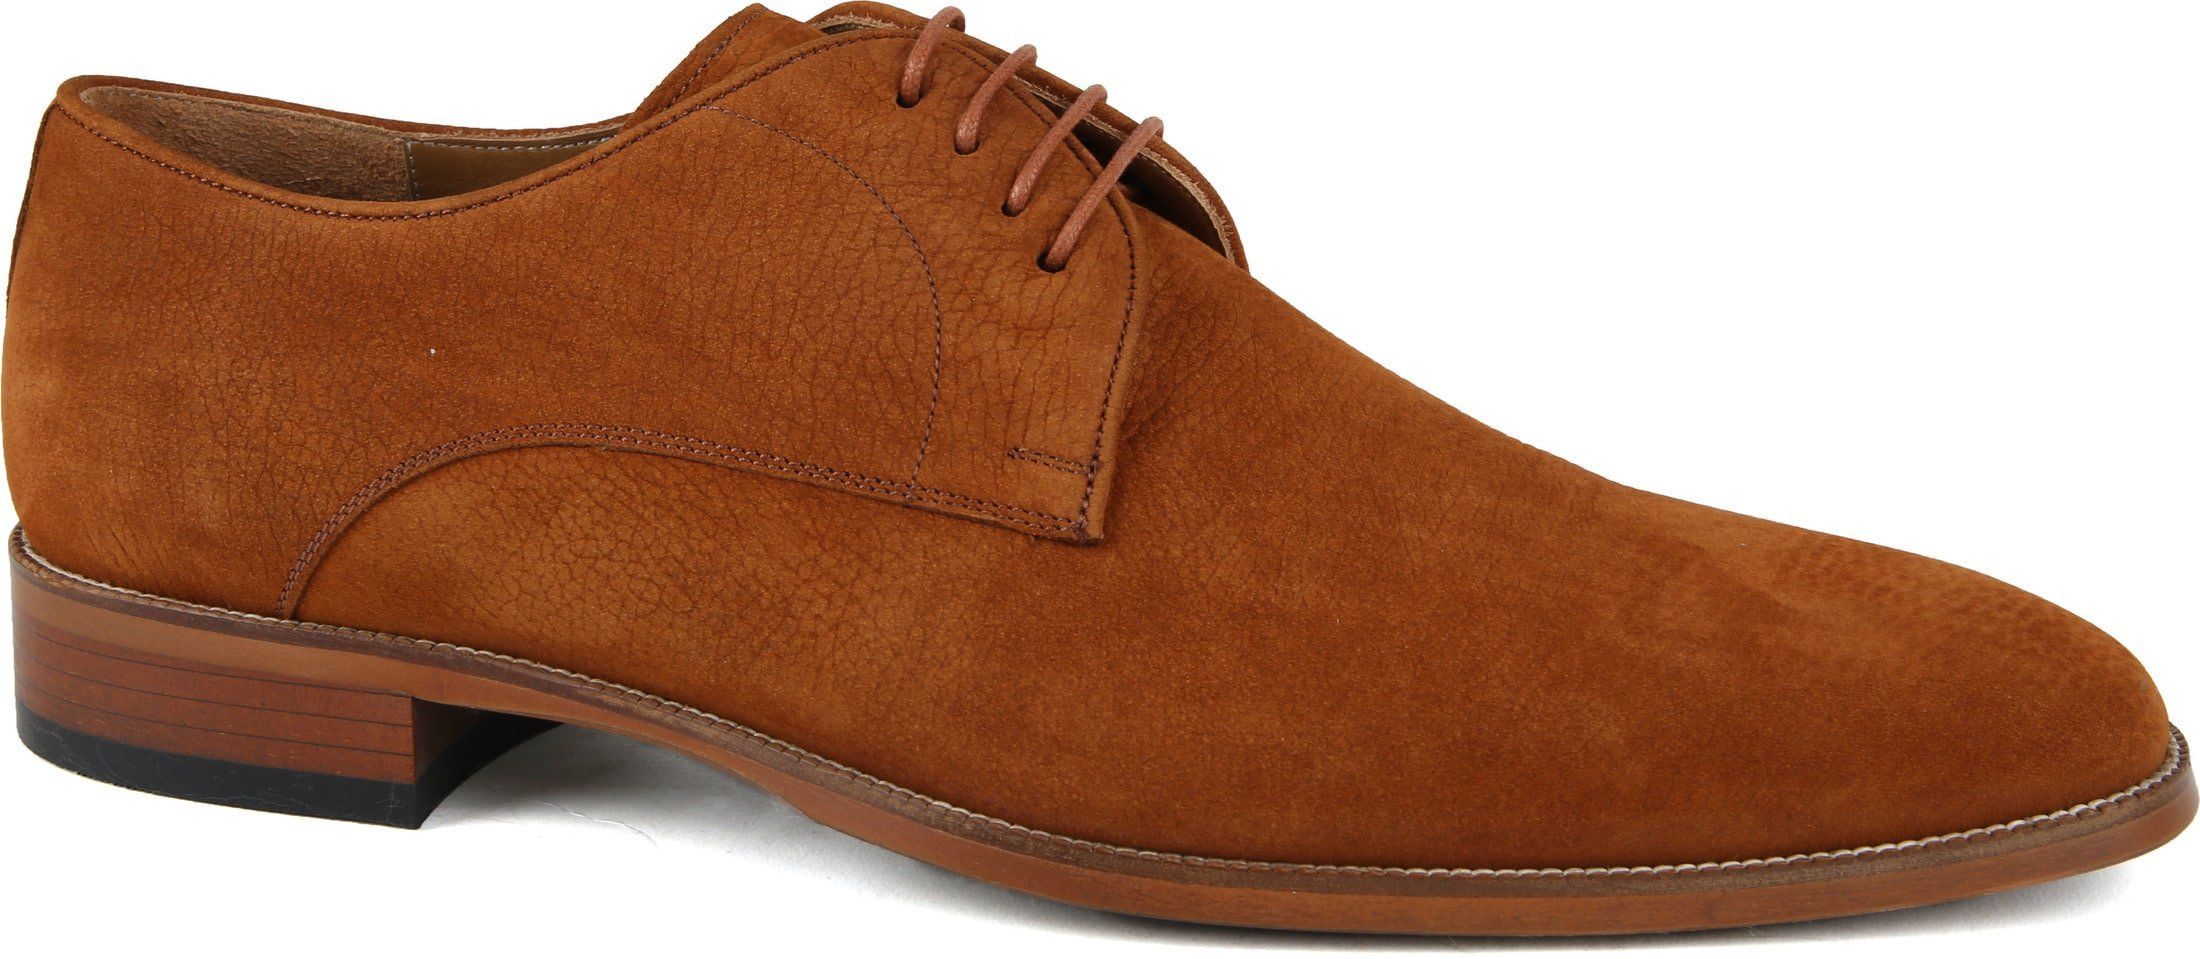 Suitable Leather Shoe 740 Cognac size 10.5